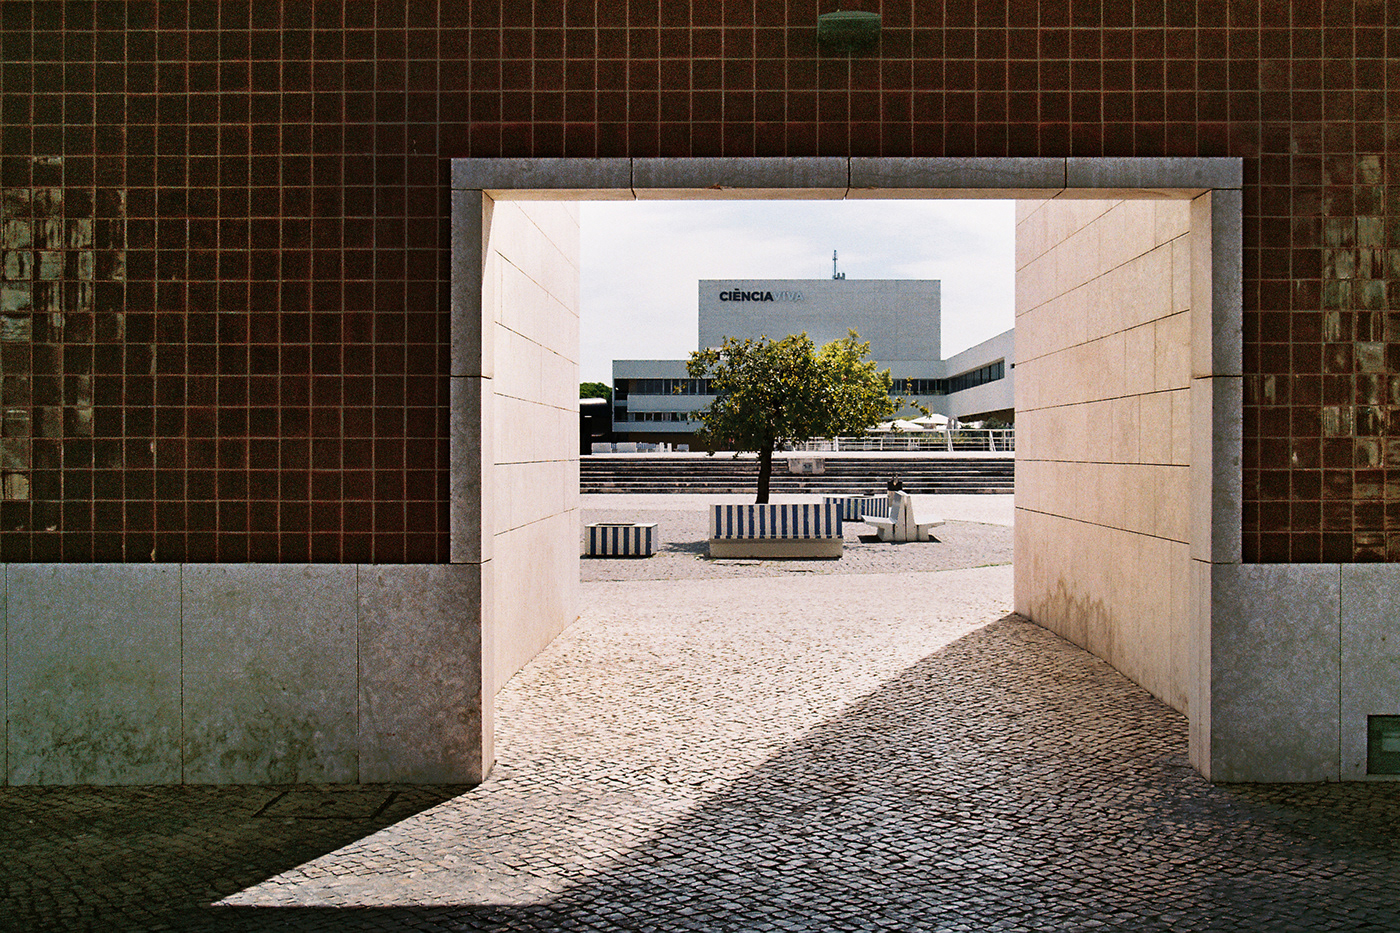 OMA Santiago Calatrava Alvero Siza architect architectural photography architecture Portugal Lisbon porto